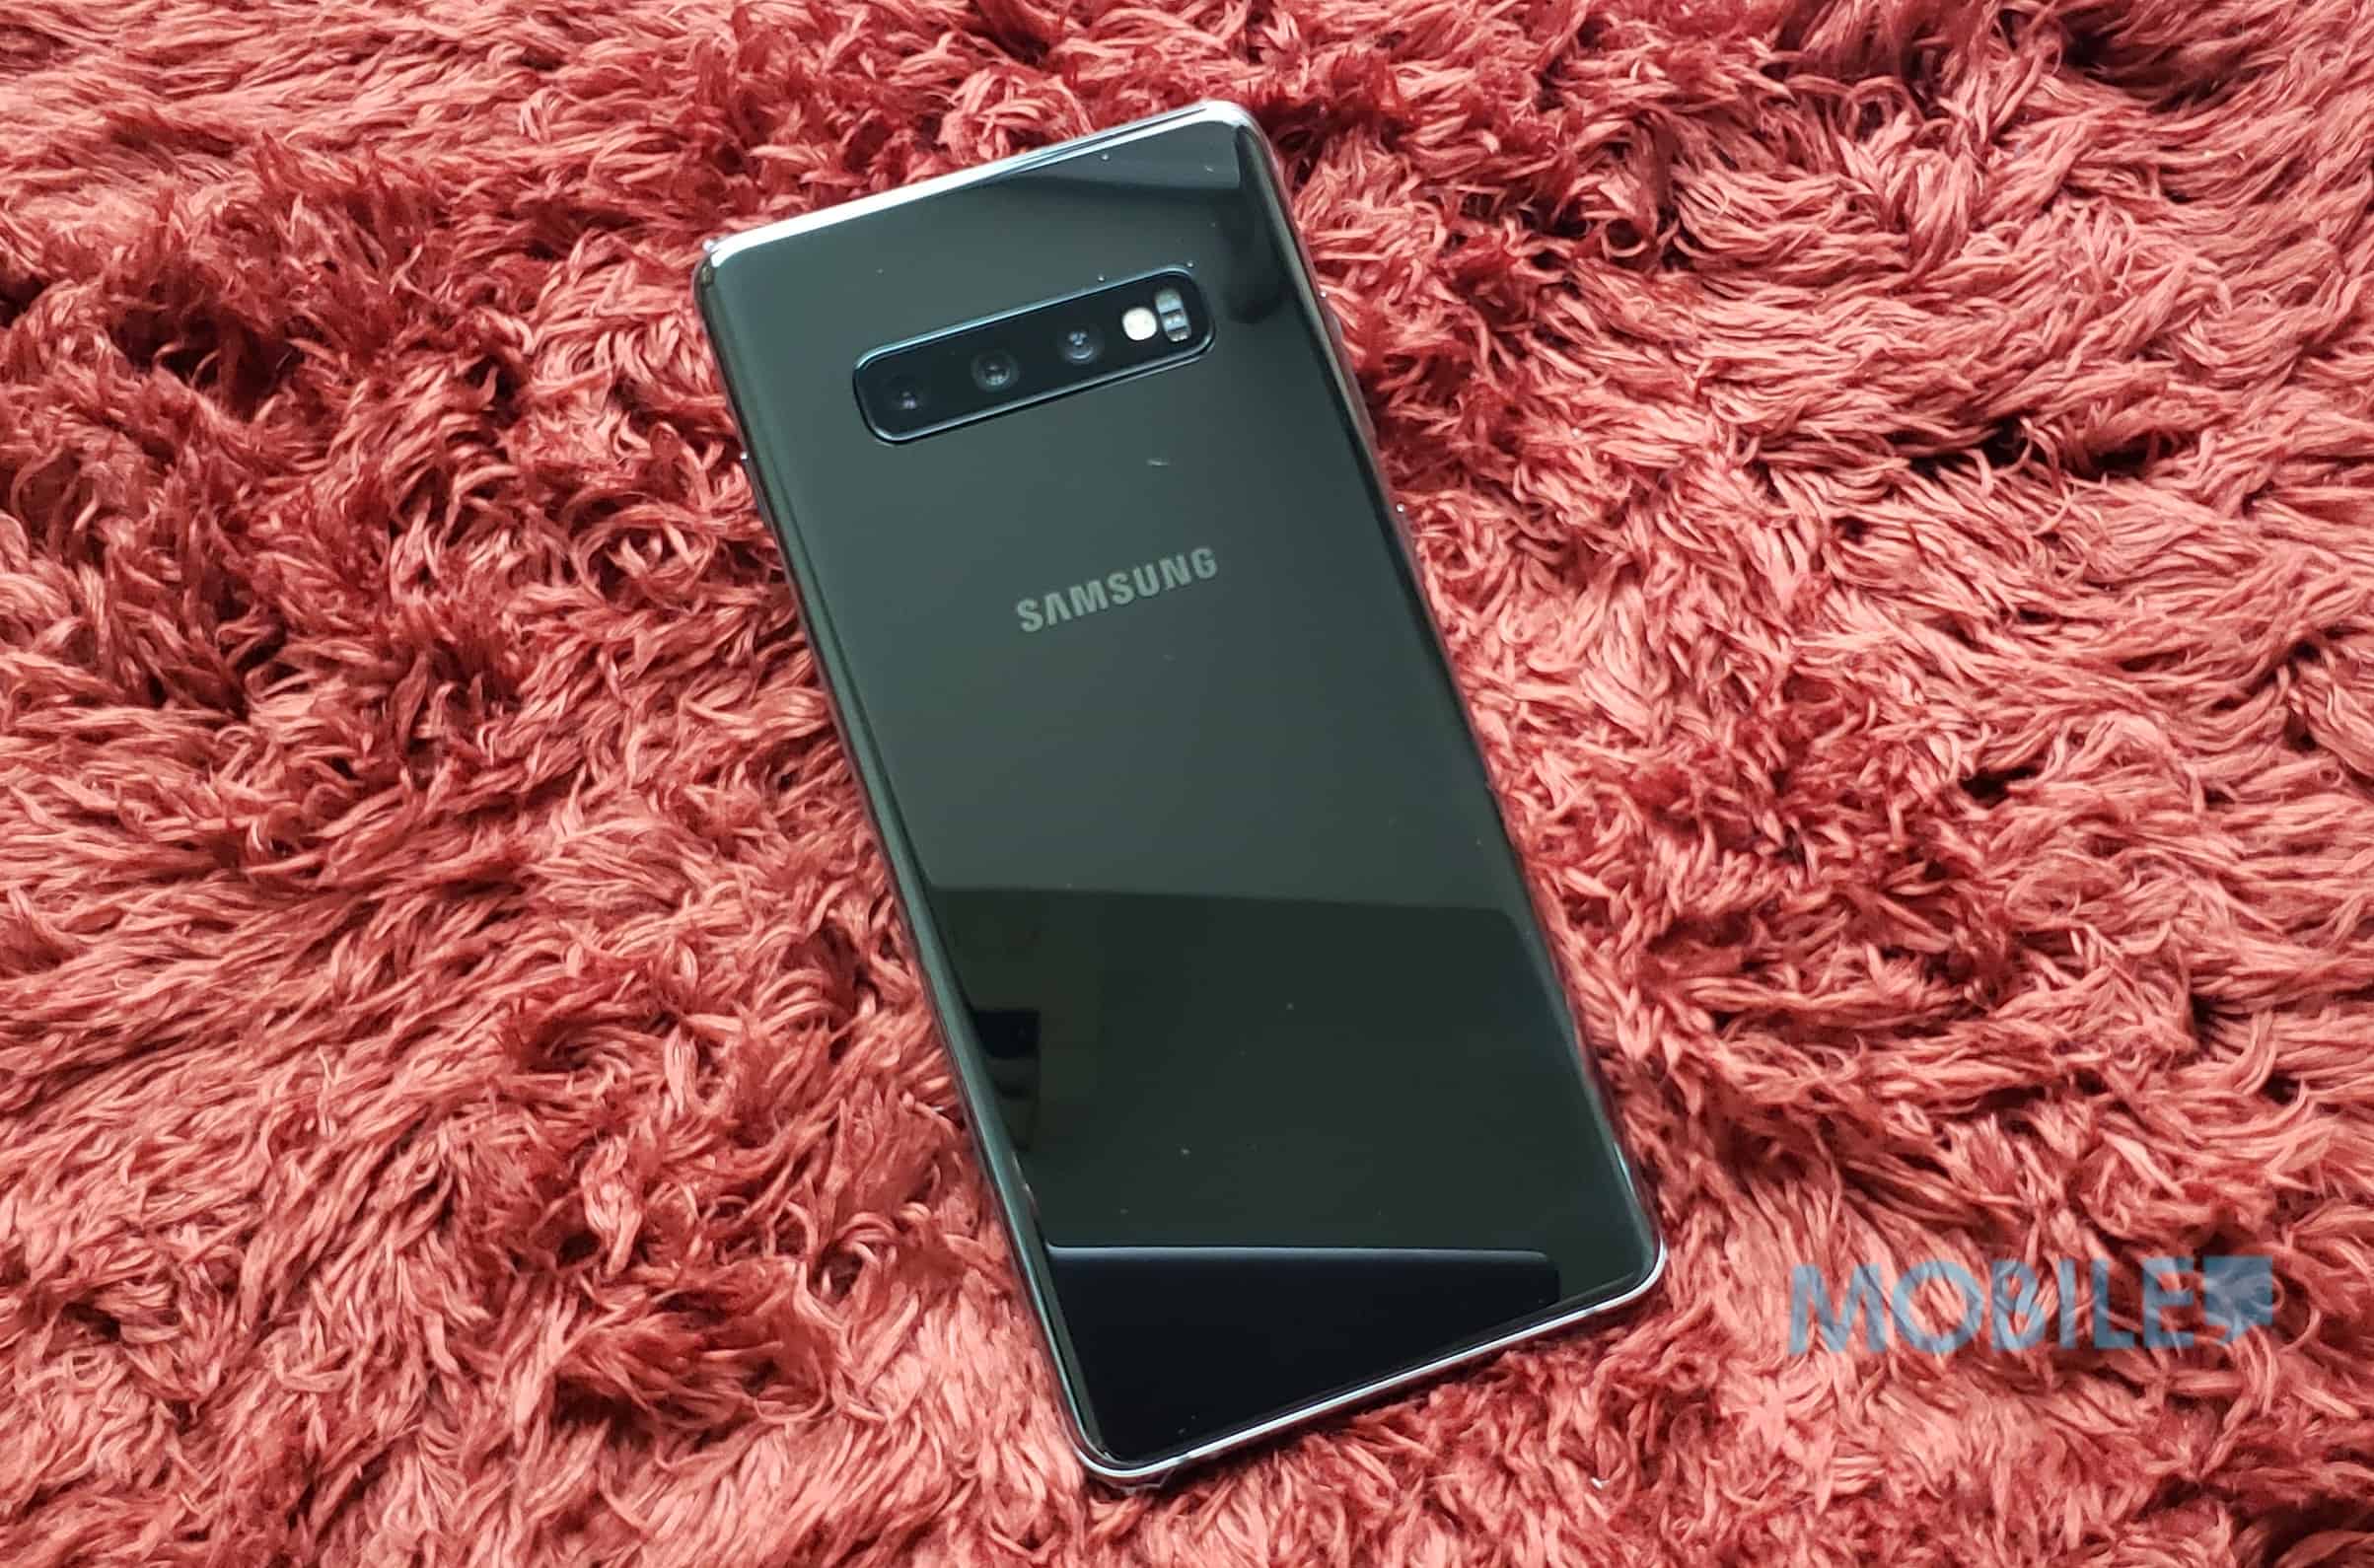 Samsung Galaxy S10+ 價錢Price 及評測：2019年旗艦指標- MobileMagazine